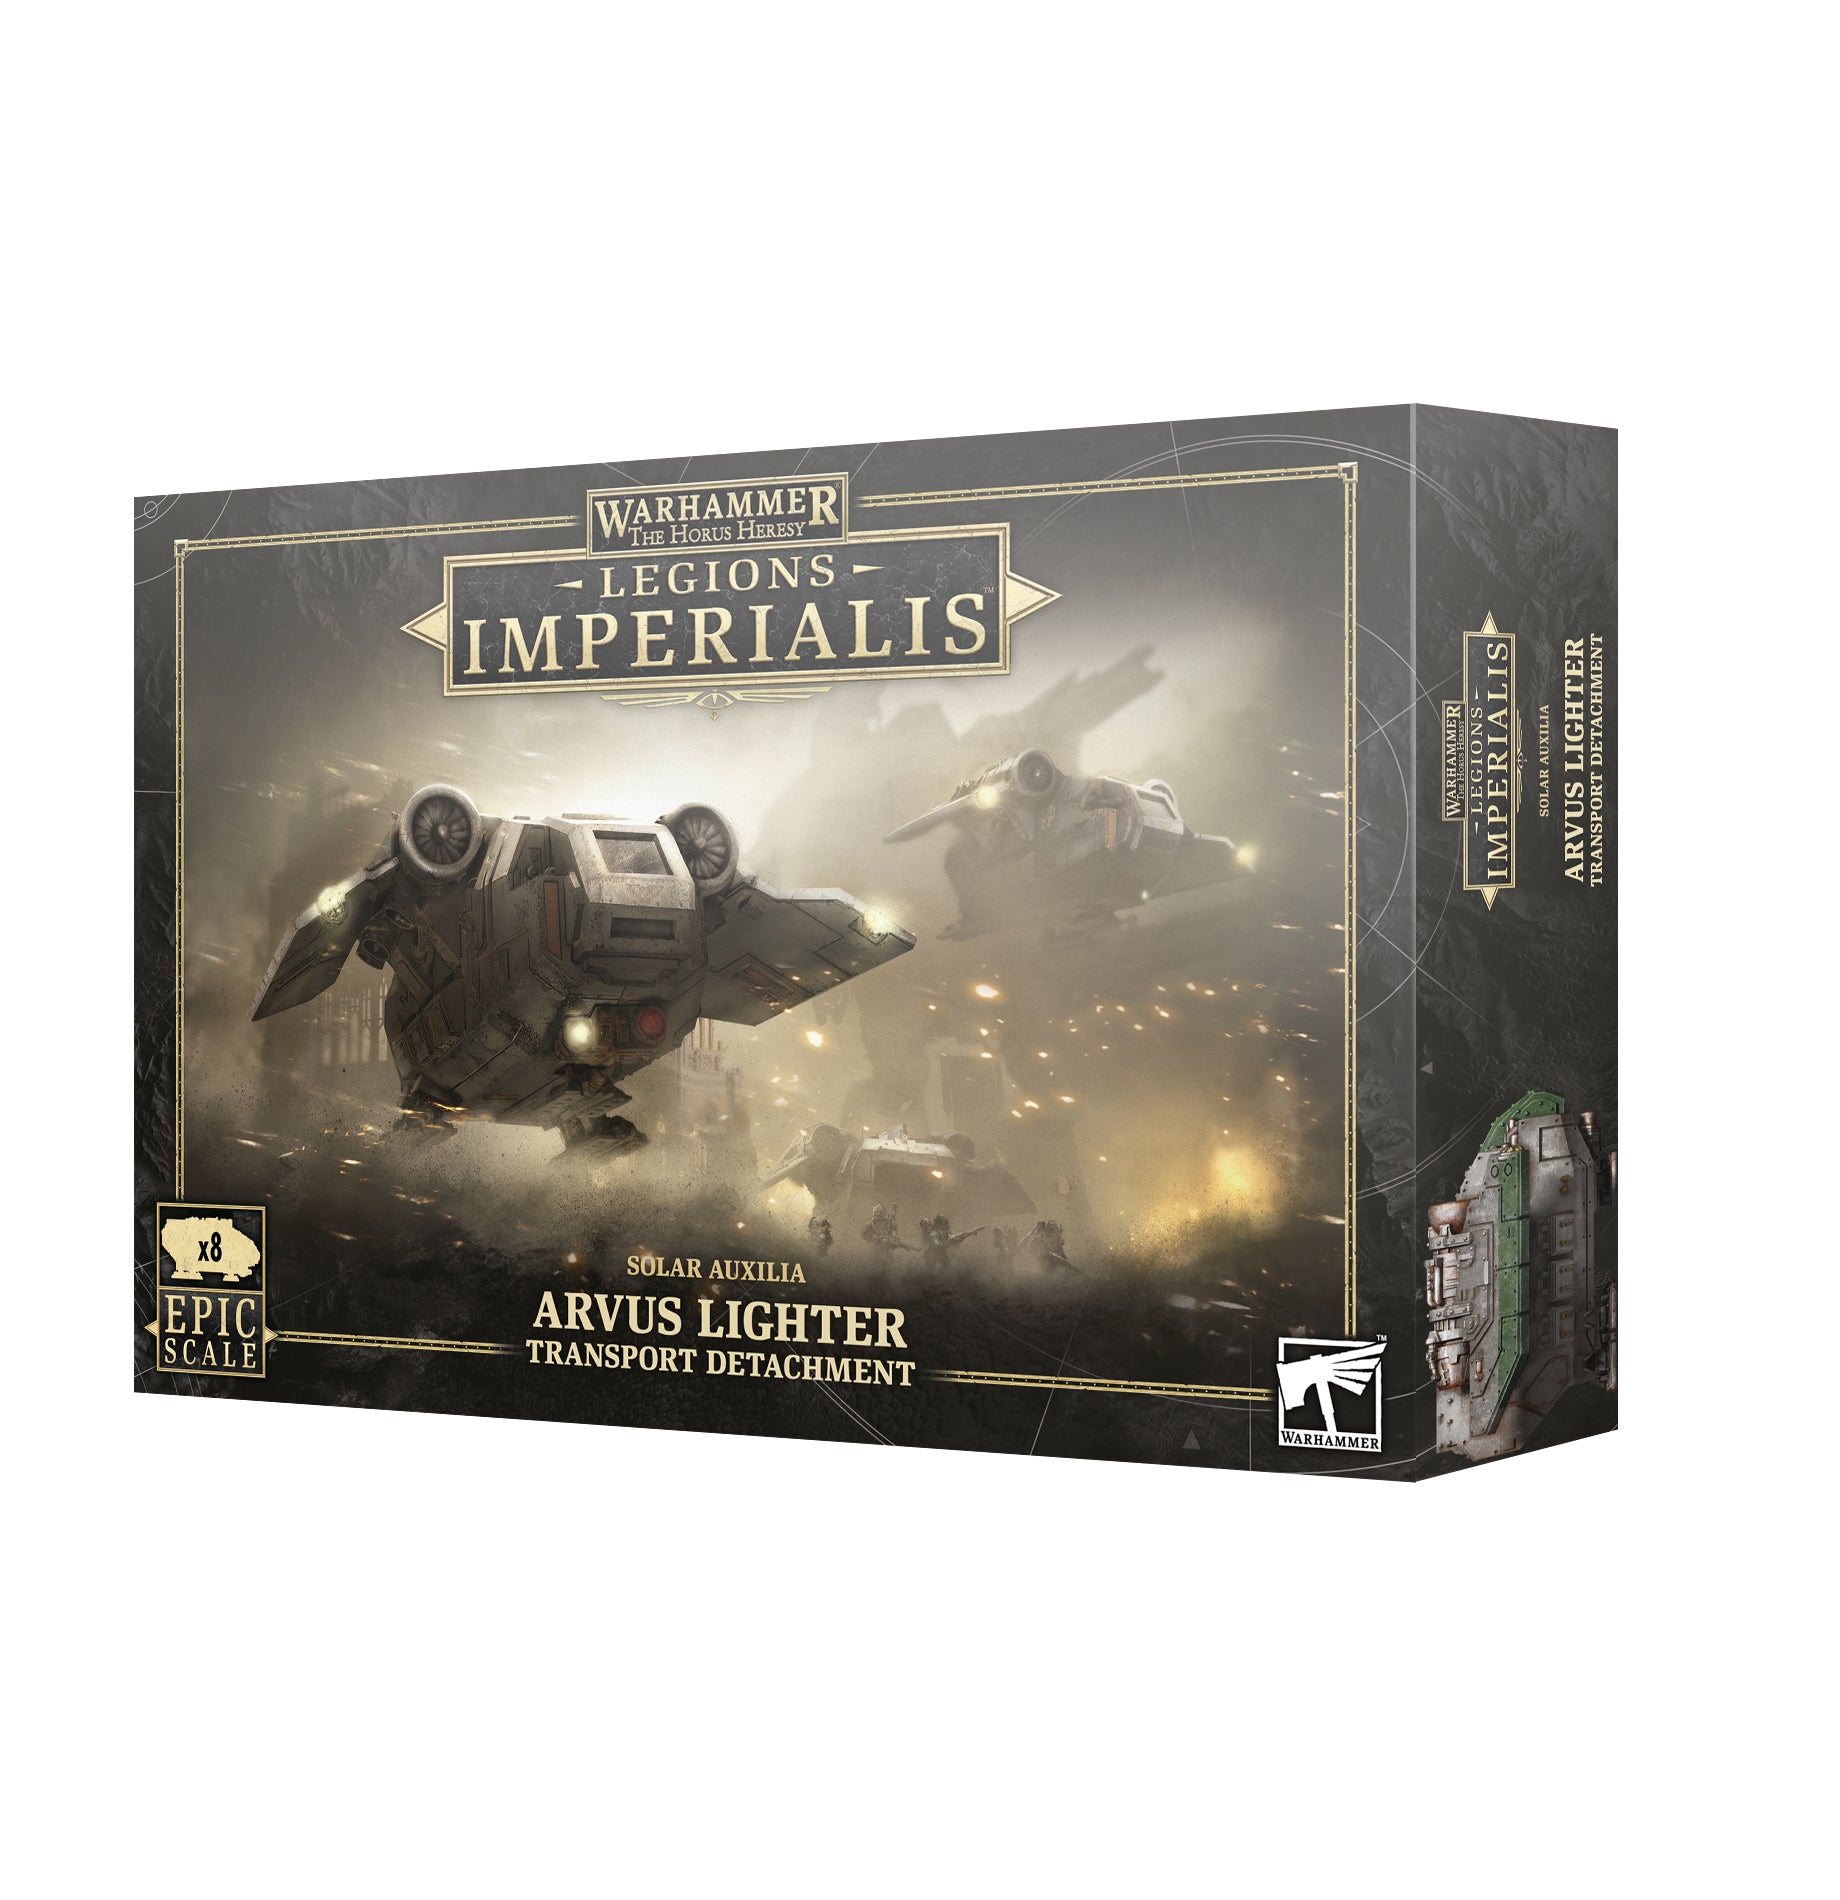 Legions Imperialis: Solar Auxilia Arvus Lighter Transport Detachment